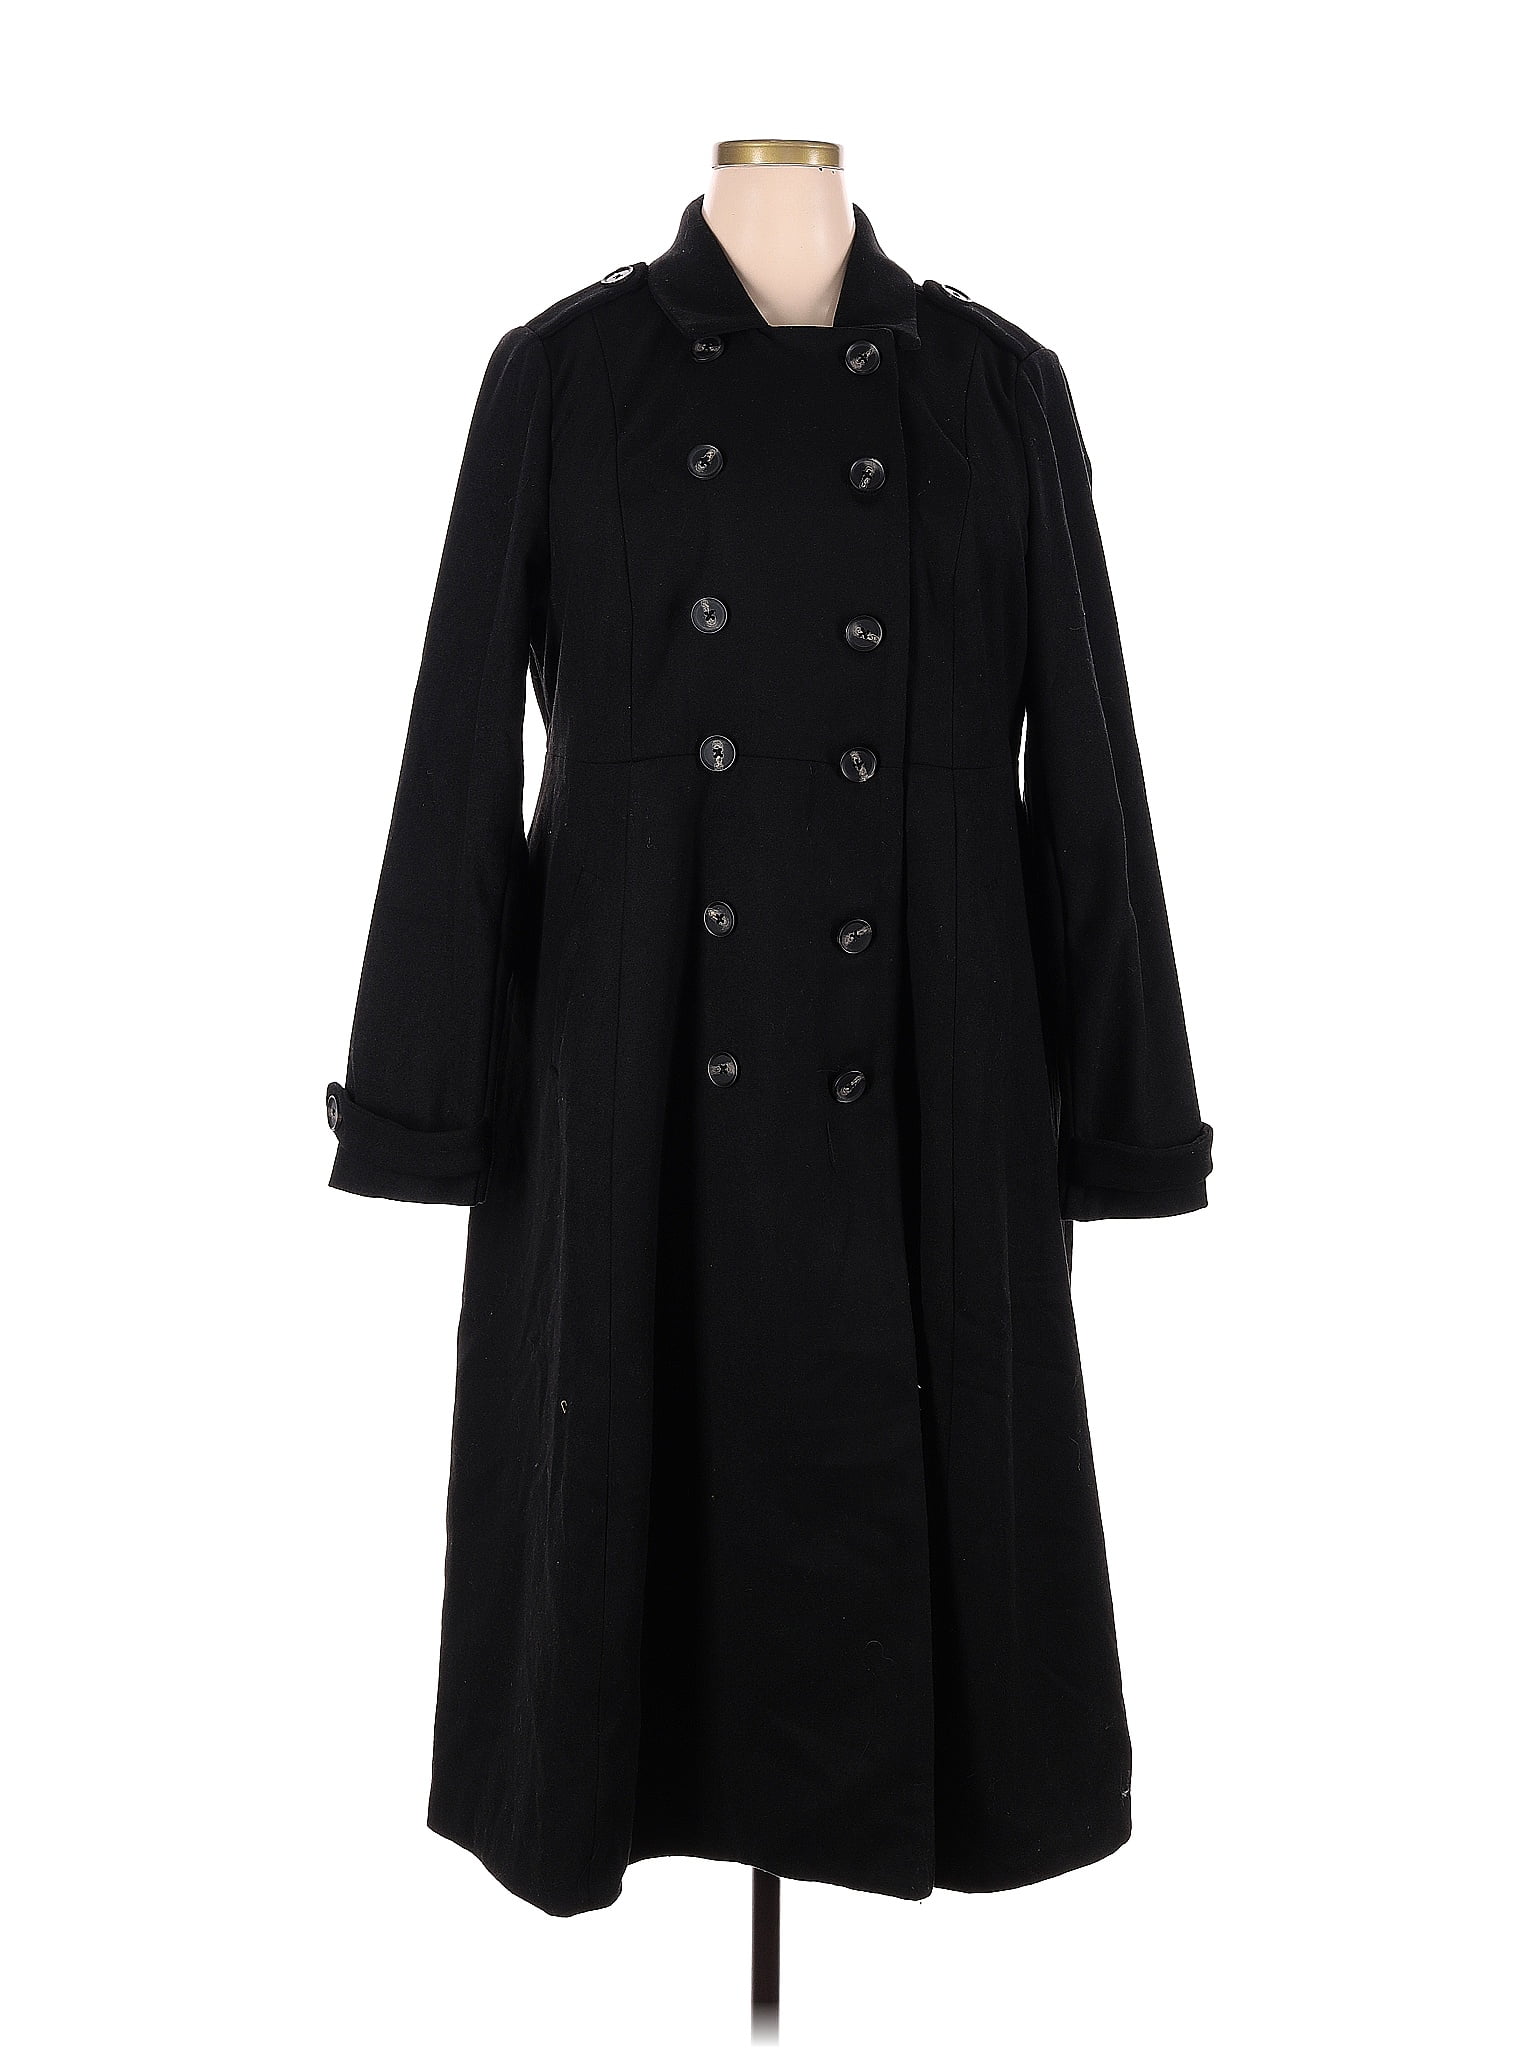 Torrid Solid Black Coat Size 2X Plus (2) (Plus) - 21% off | ThredUp